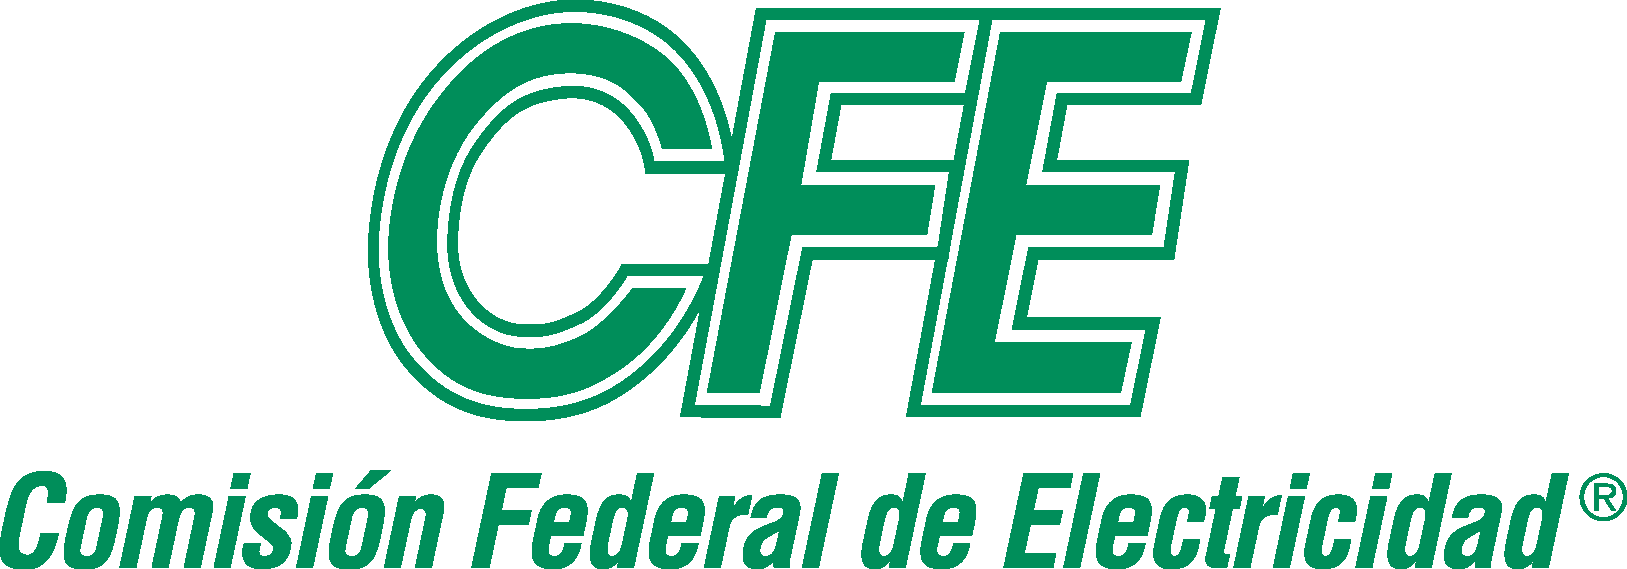 CFE Logo   Comision Federal de Electricidad png